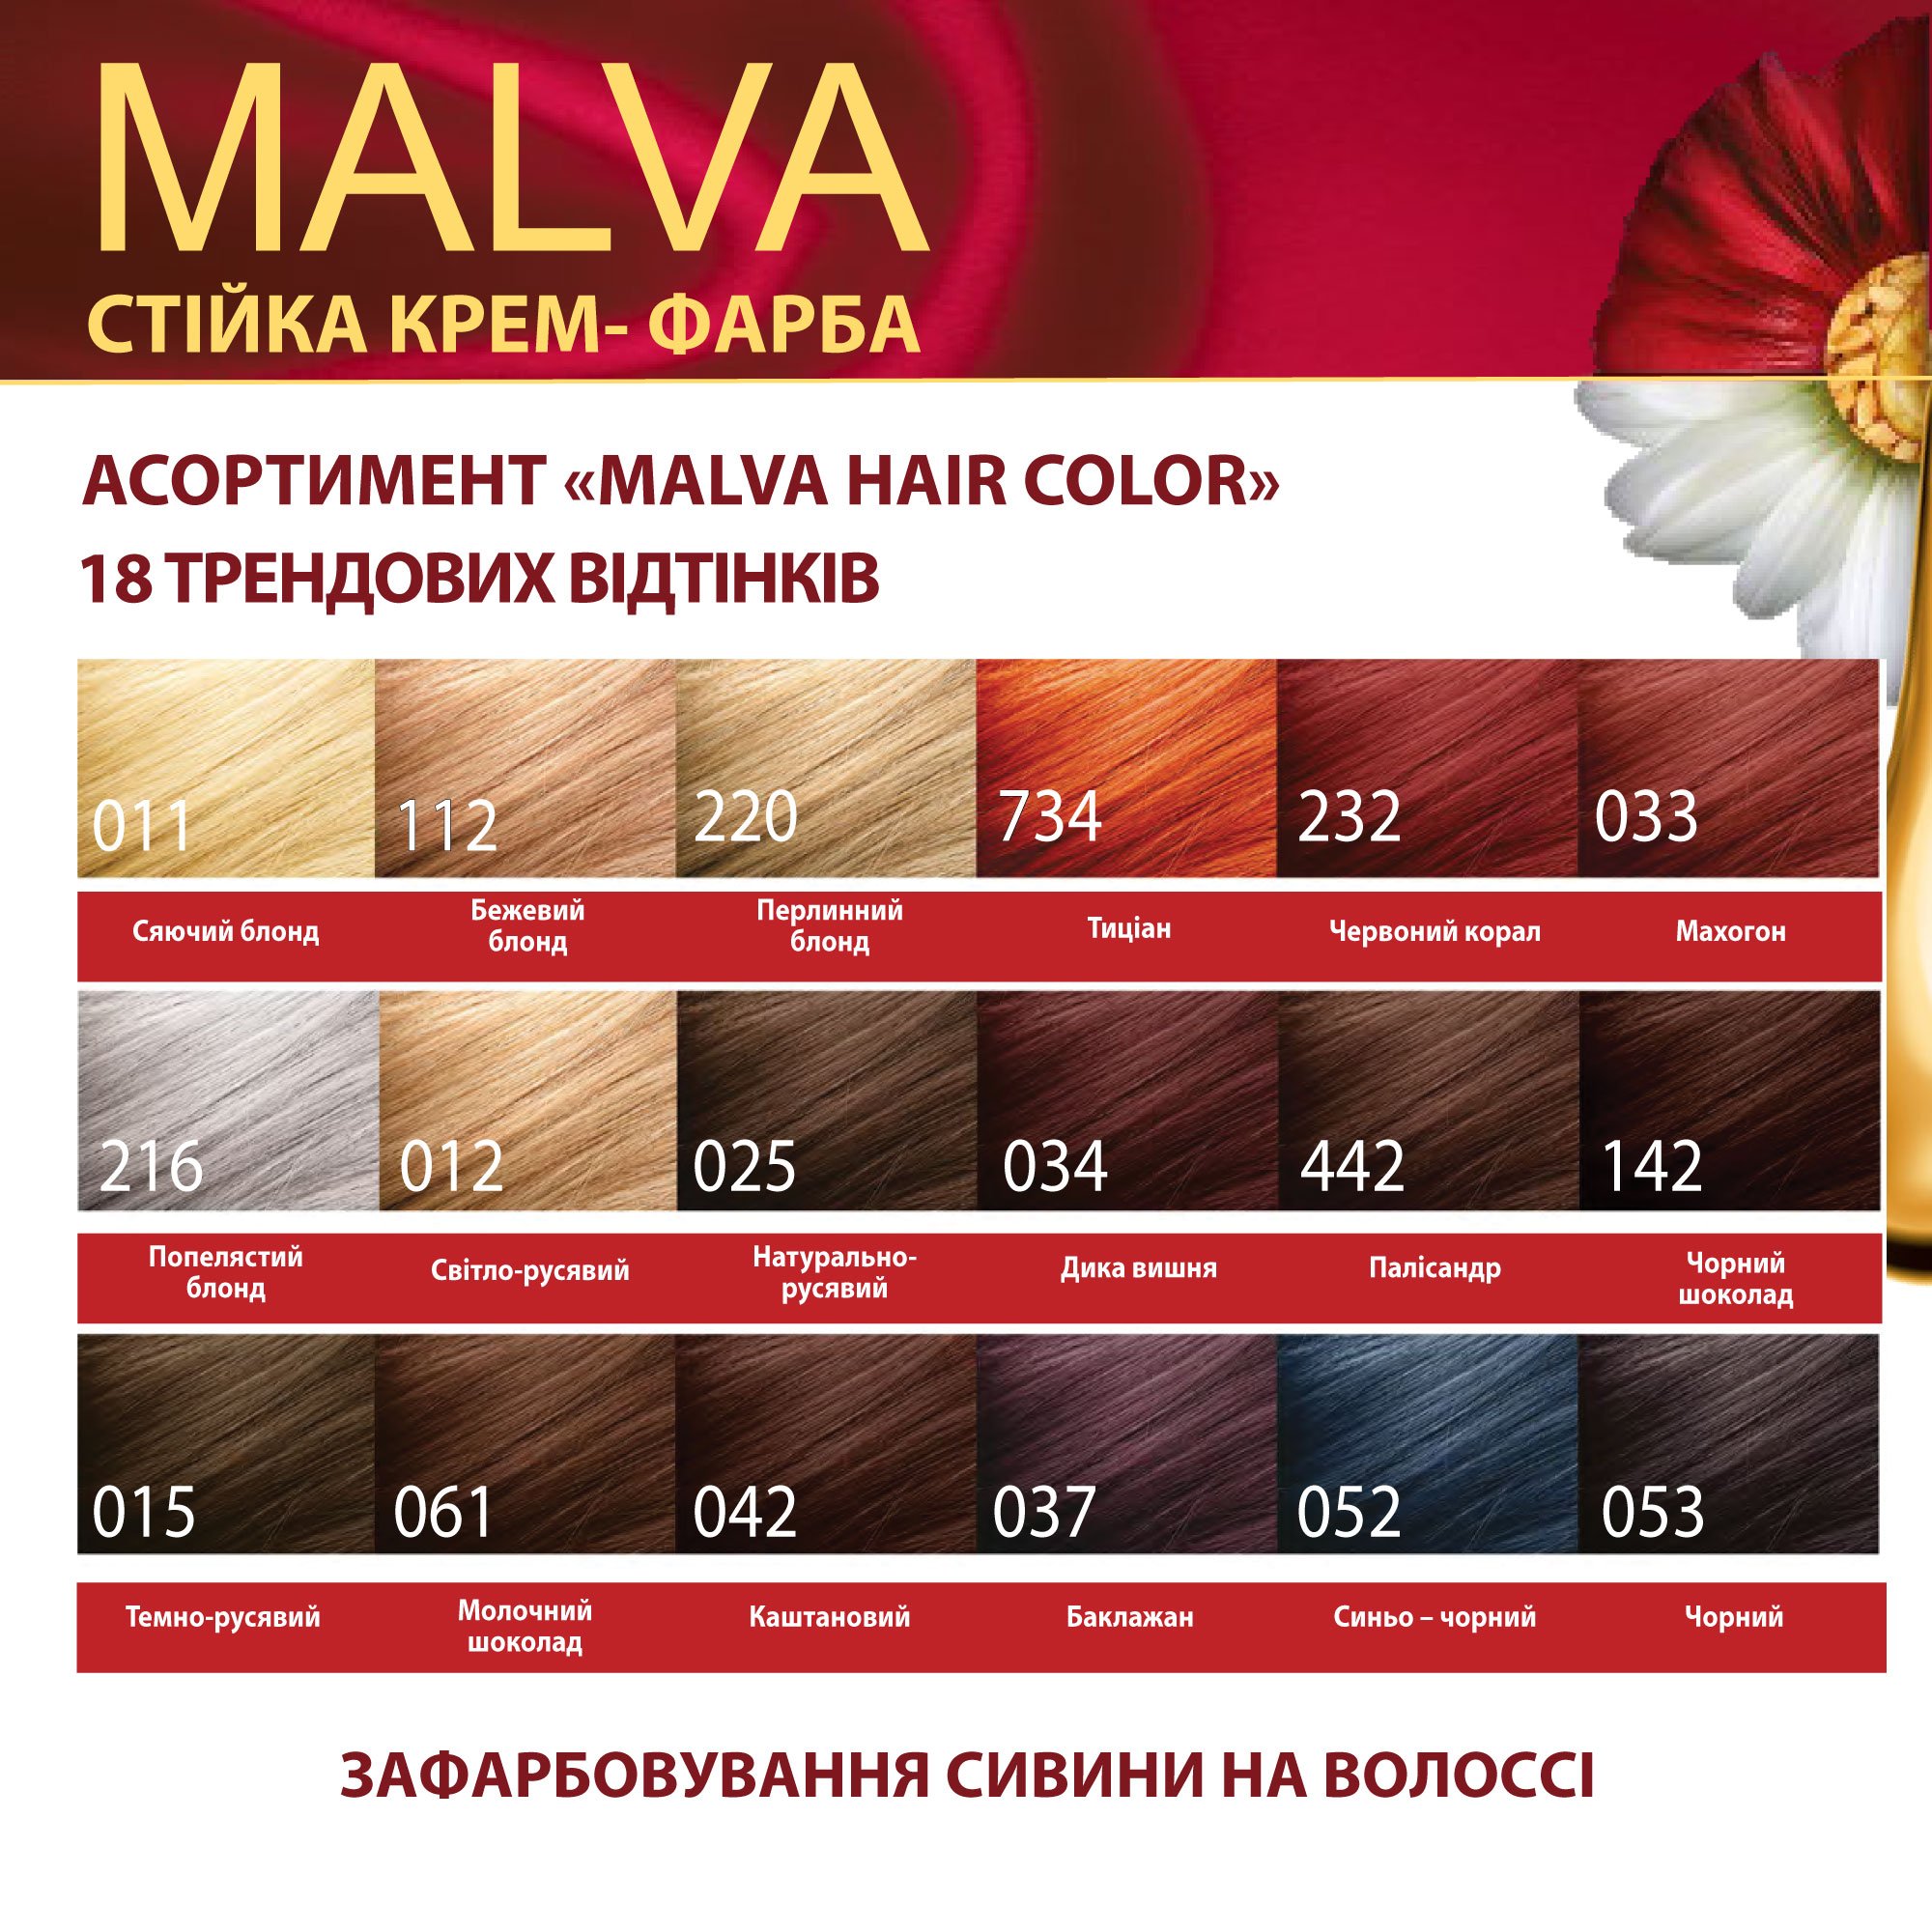 Крем-фарба для волосся Acme Color Malva, відтінок 042 (Каштановий), 95 мл - фото 6